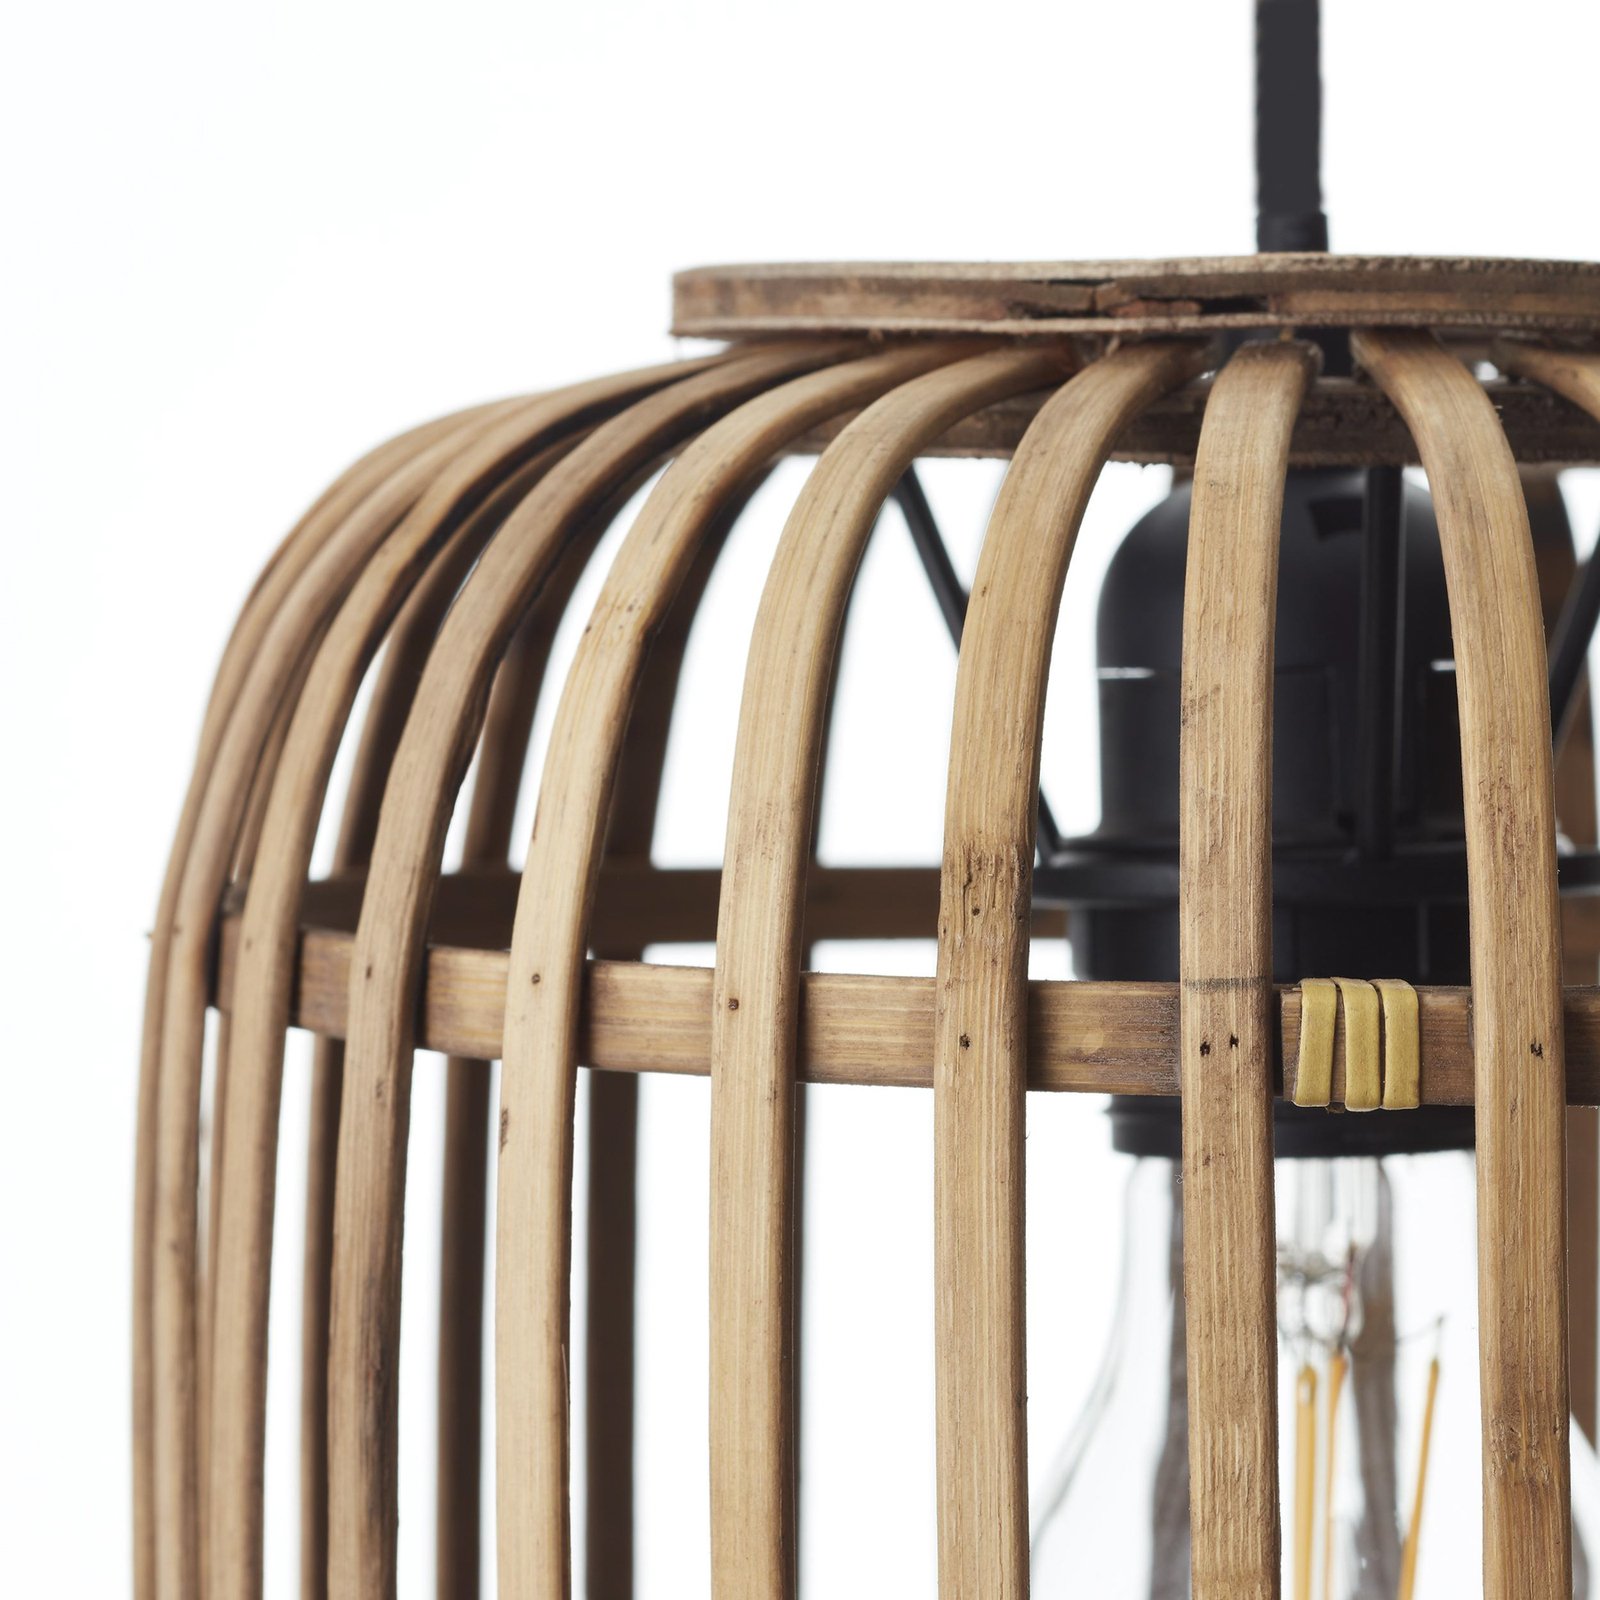 Závěsná lampa Woodrow, délka 105 cm, světlé dřevo, 3 světla, bambus